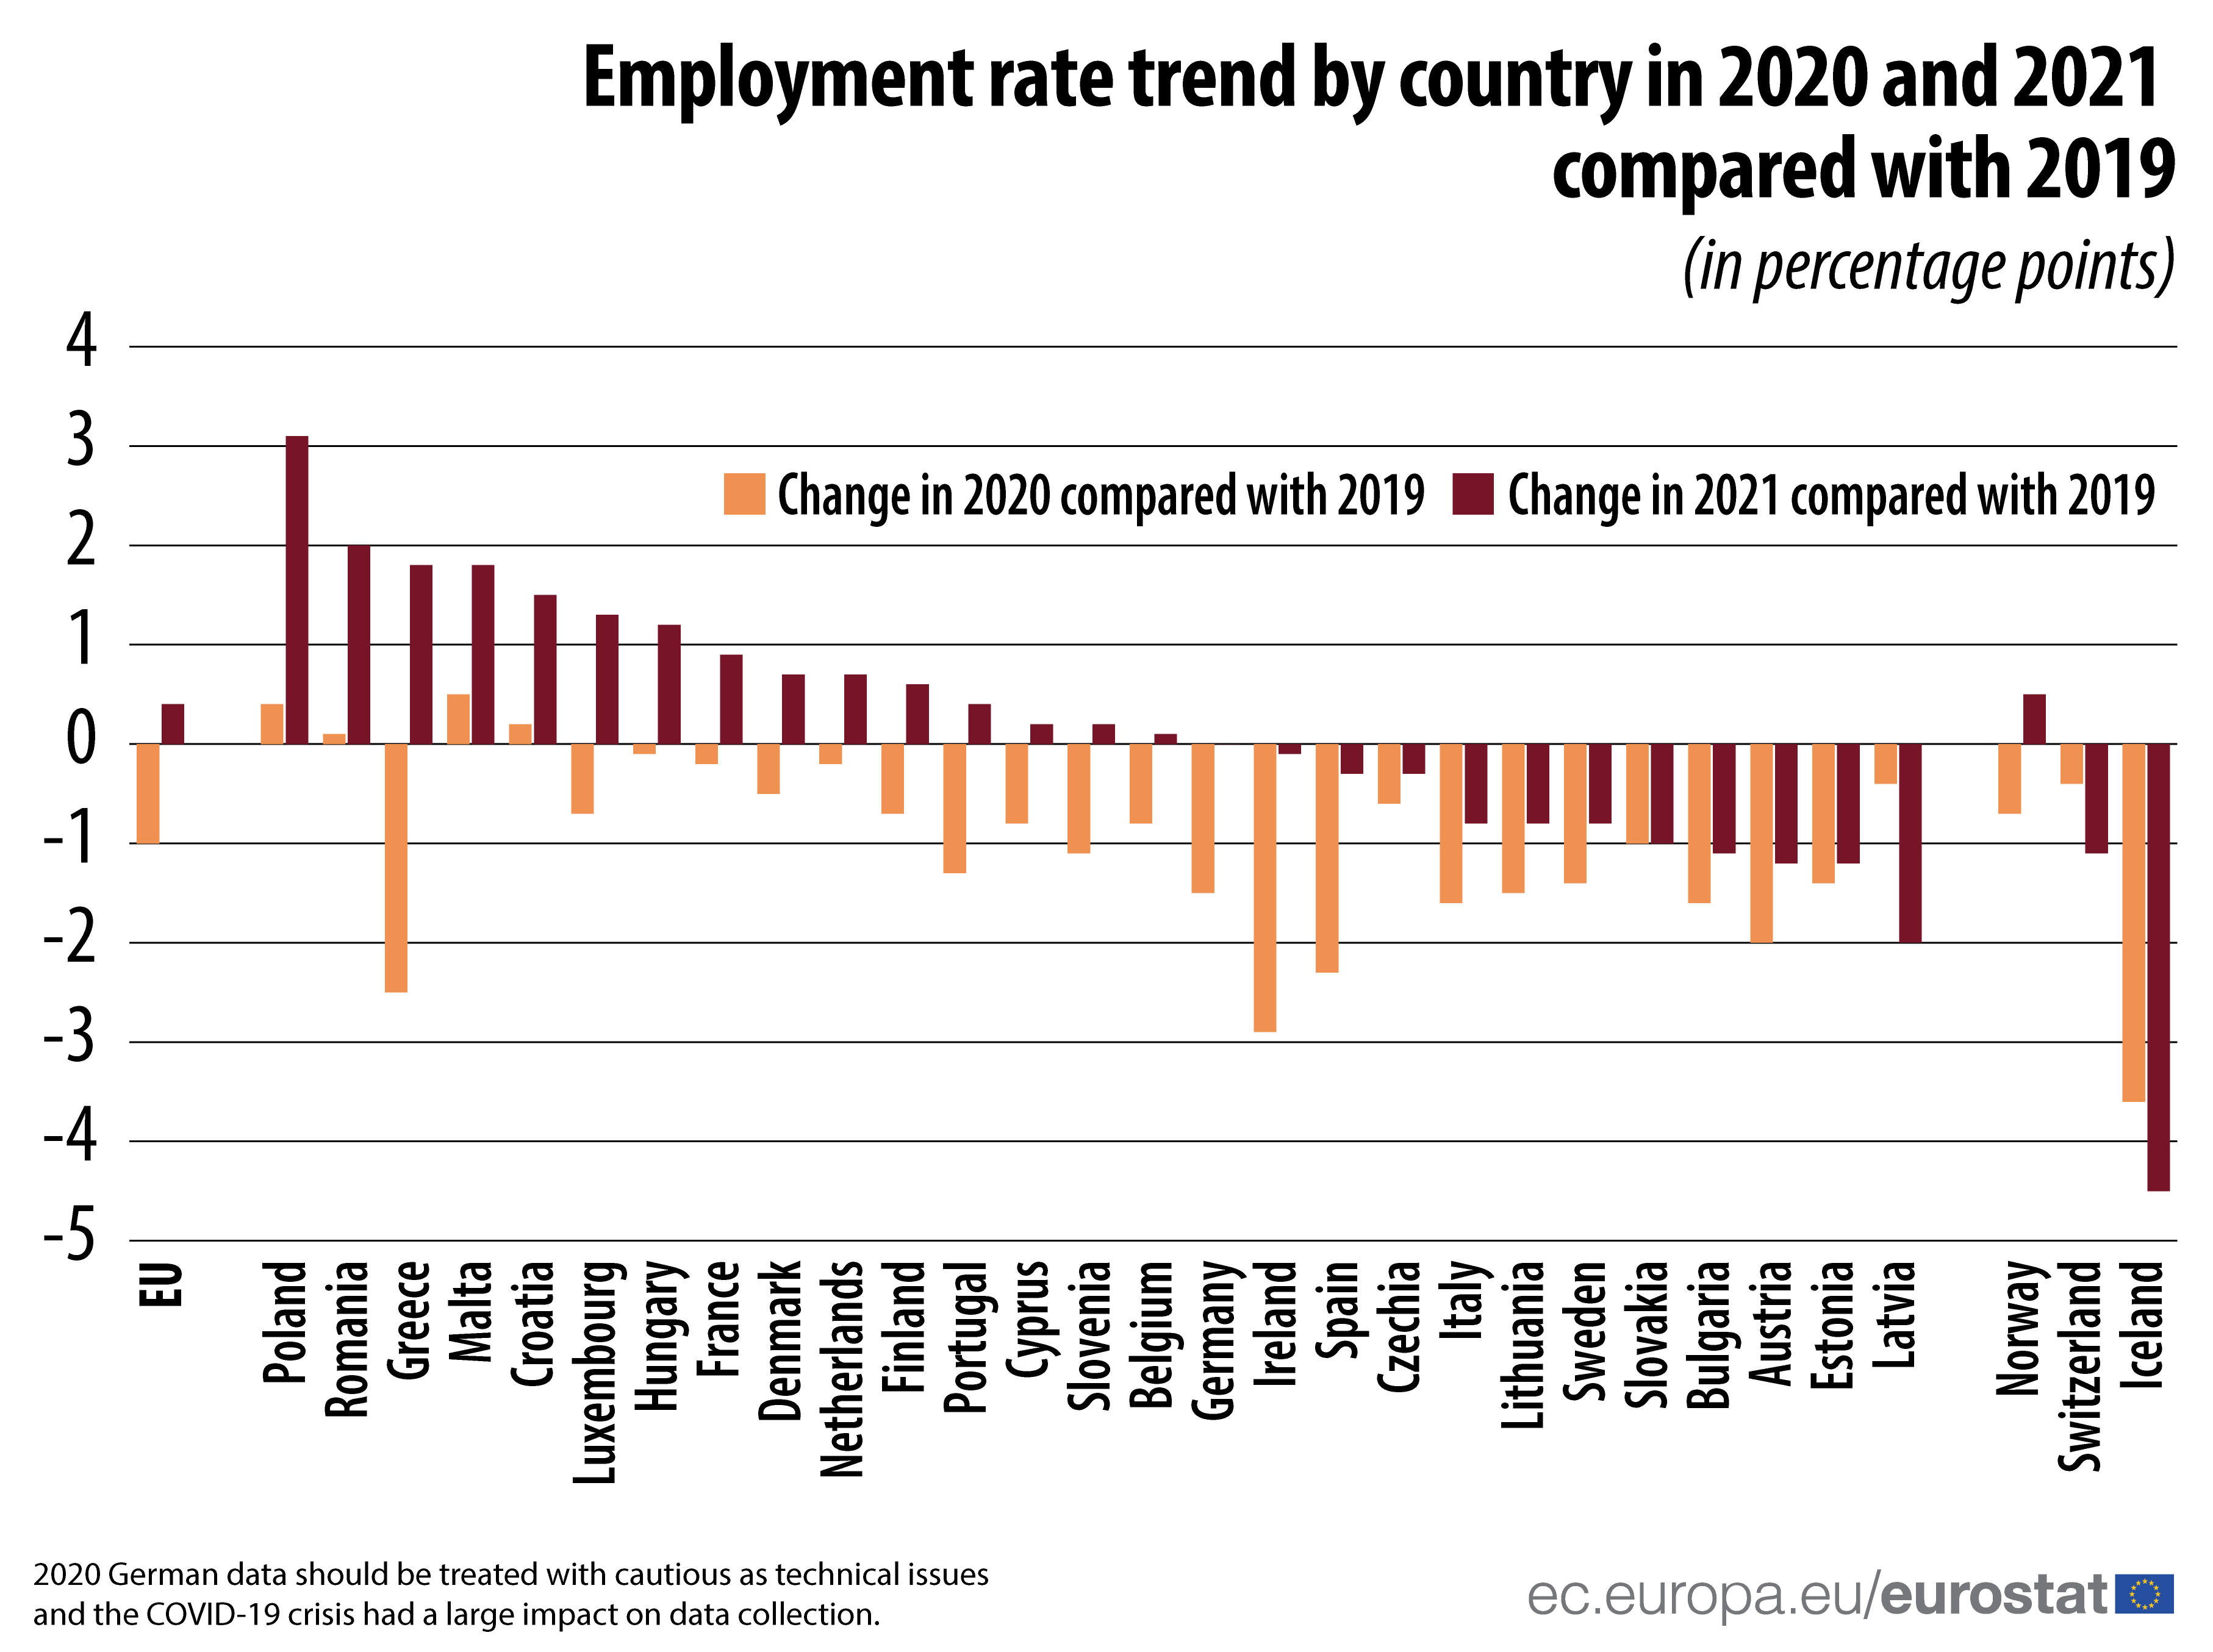 Graphique à barres : Évolution du taux d'emploi par pays en 2020 et 2021 par rapport à 2019 (en points de pourcentage)